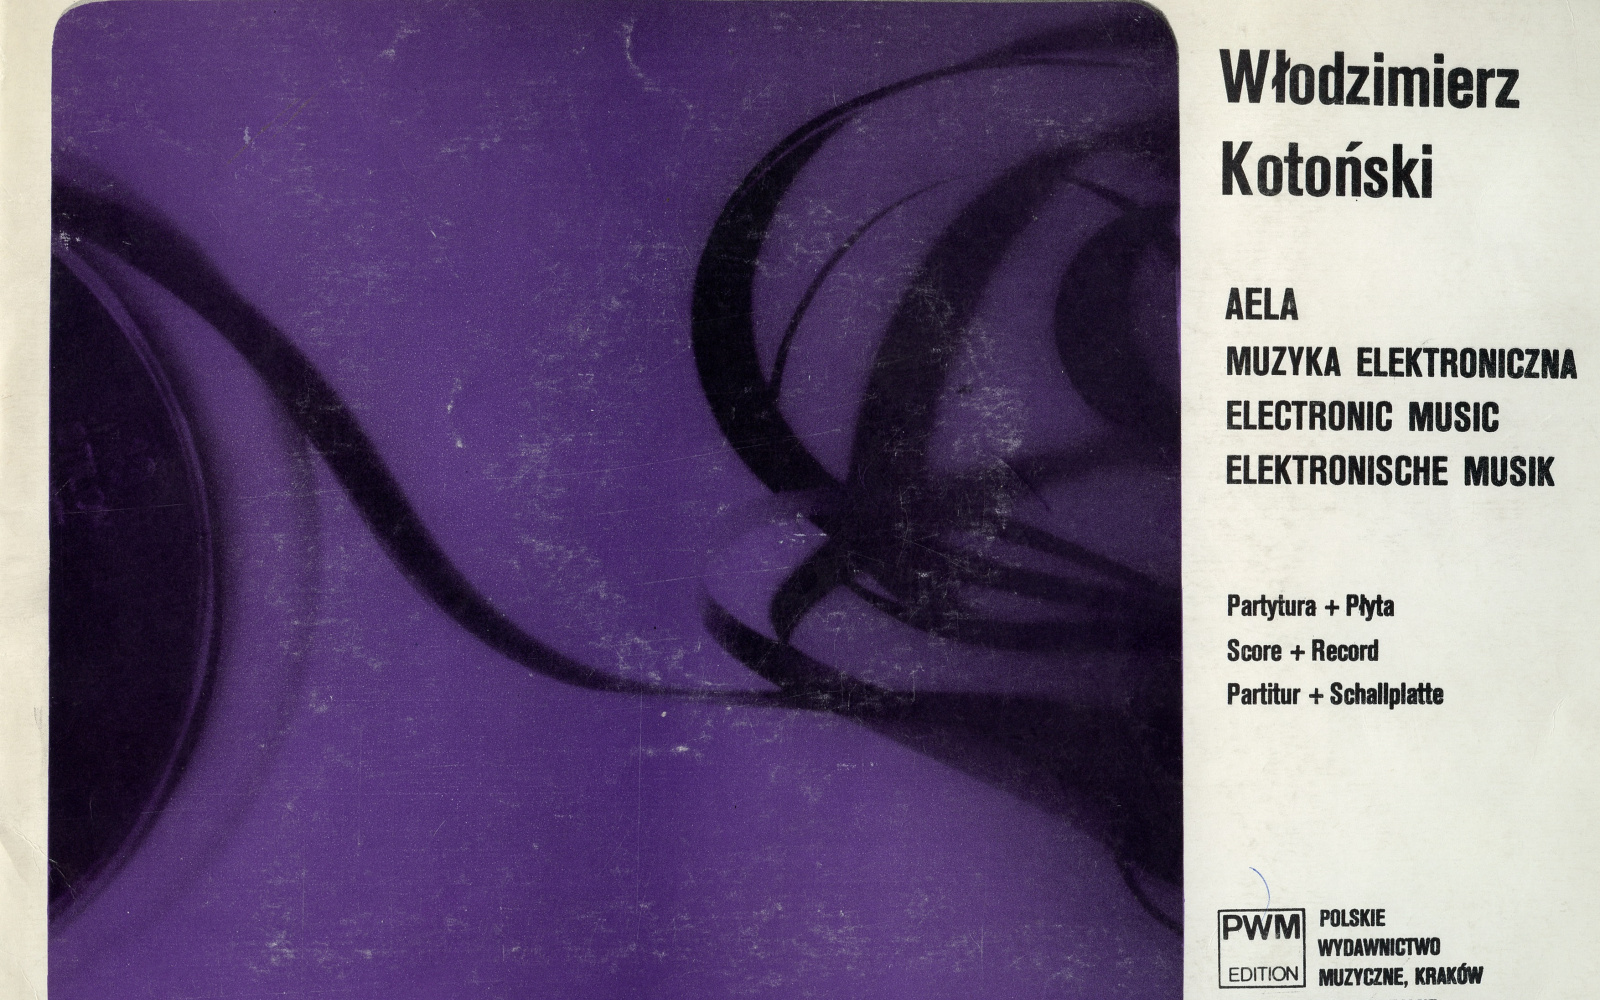 Włodzimierz Kotoński: AELA (1970)  Cover of the publication with the graphic score